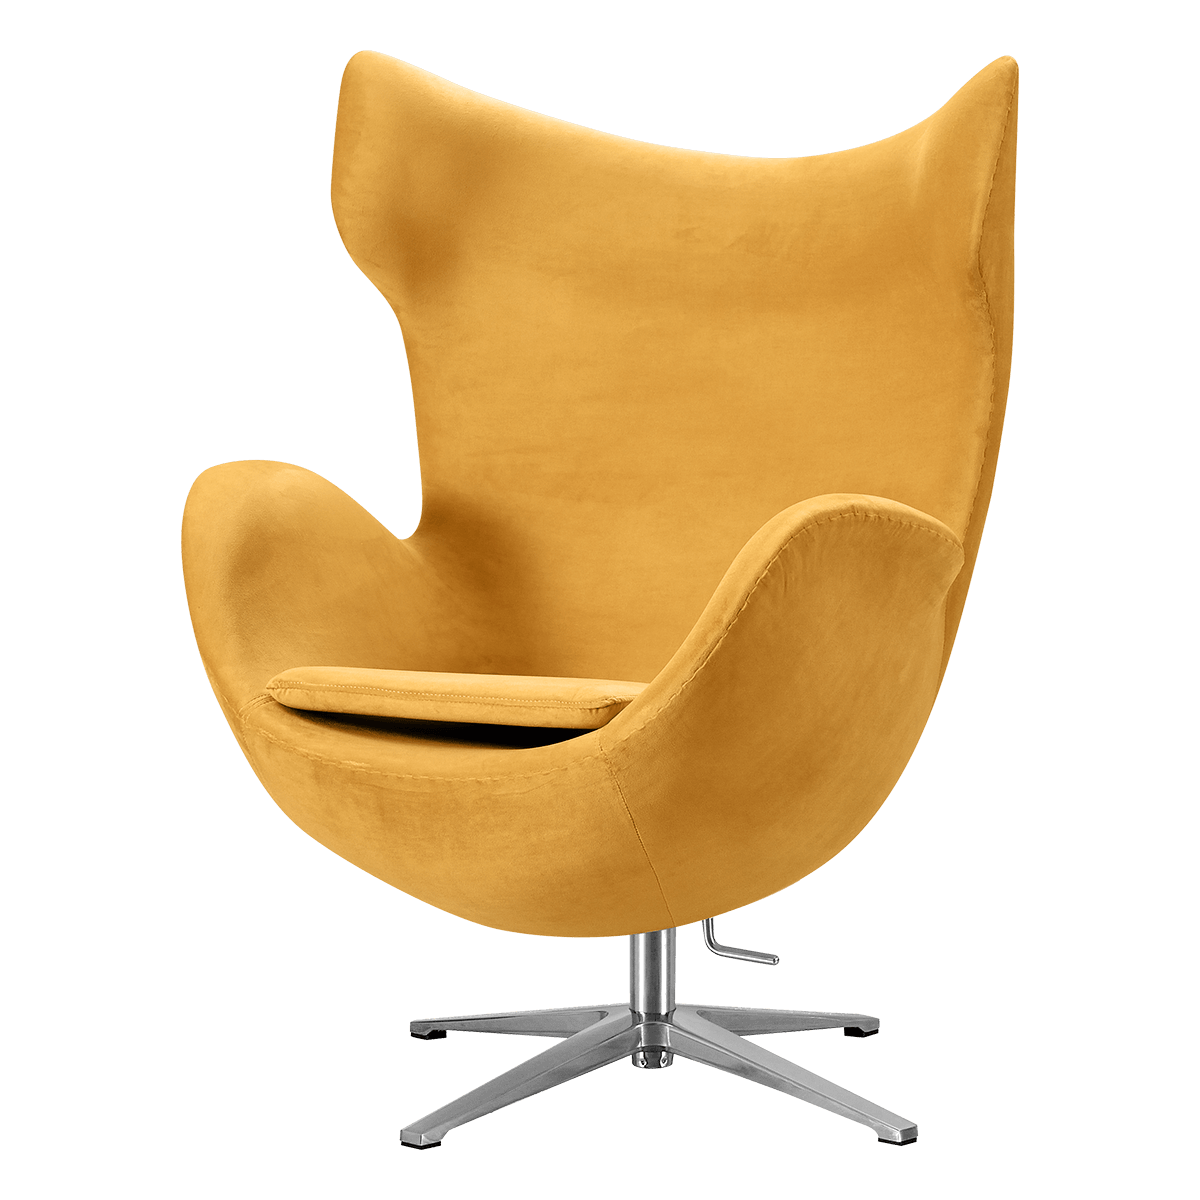 plakband Bevatten Krachtcel Flegg Chairs kopen? Bestel eenvoudig online bij Cavel Design